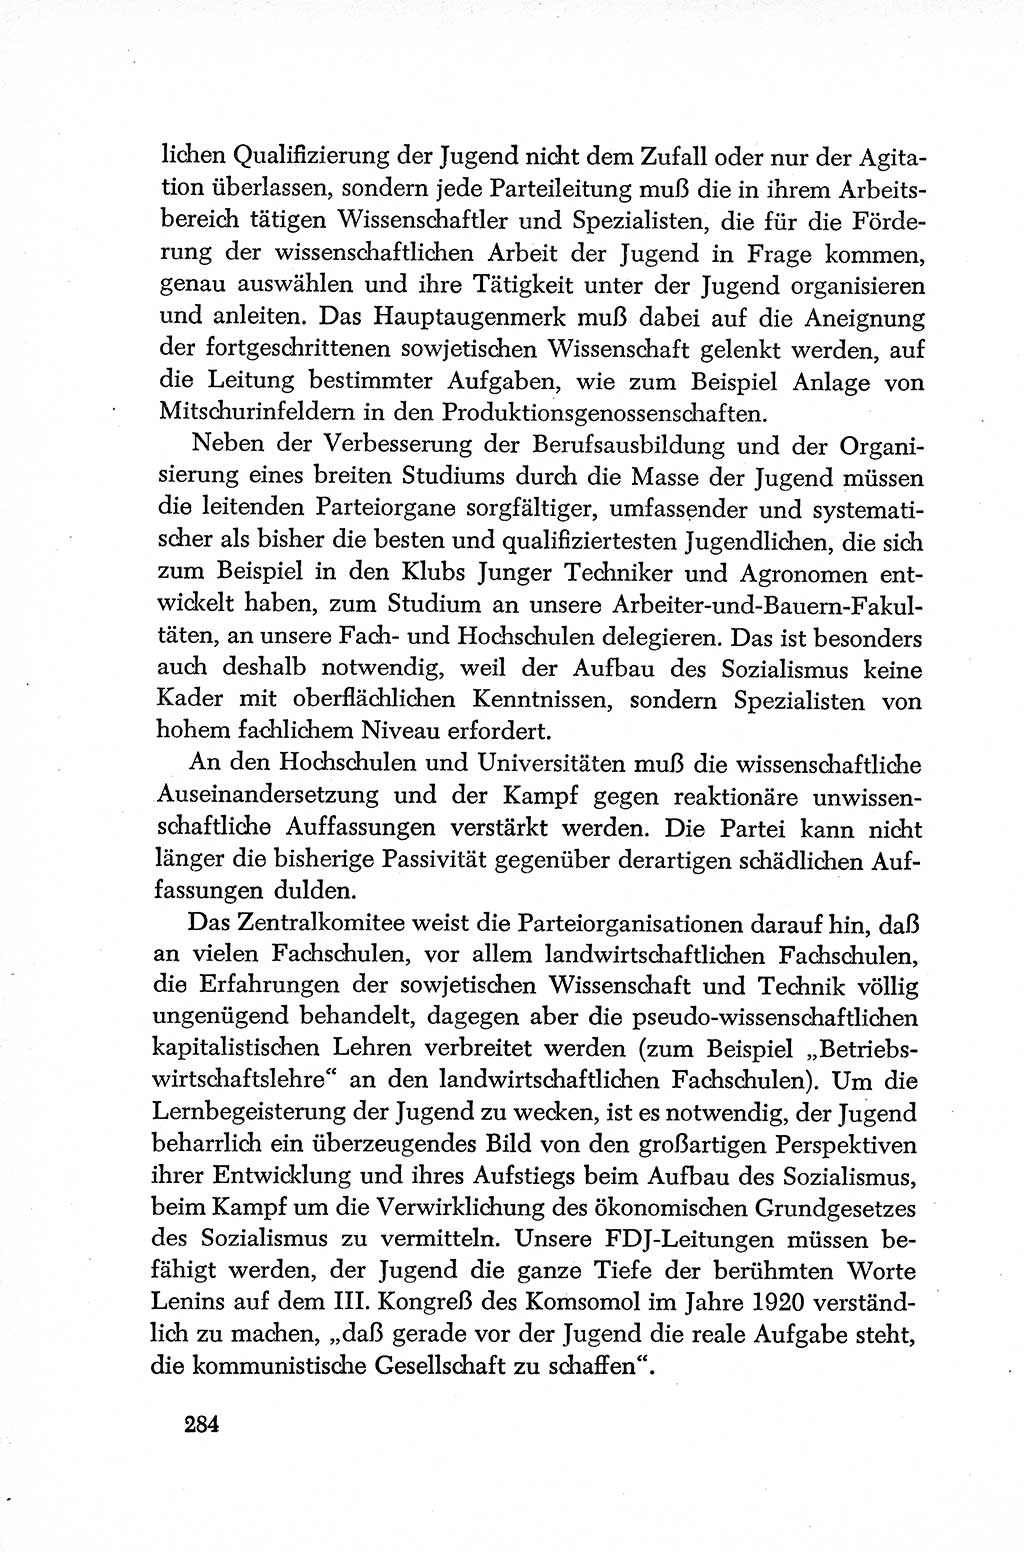 Dokumente der Sozialistischen Einheitspartei Deutschlands (SED) [Deutsche Demokratische Republik (DDR)] 1952-1953, Seite 284 (Dok. SED DDR 1952-1953, S. 284)